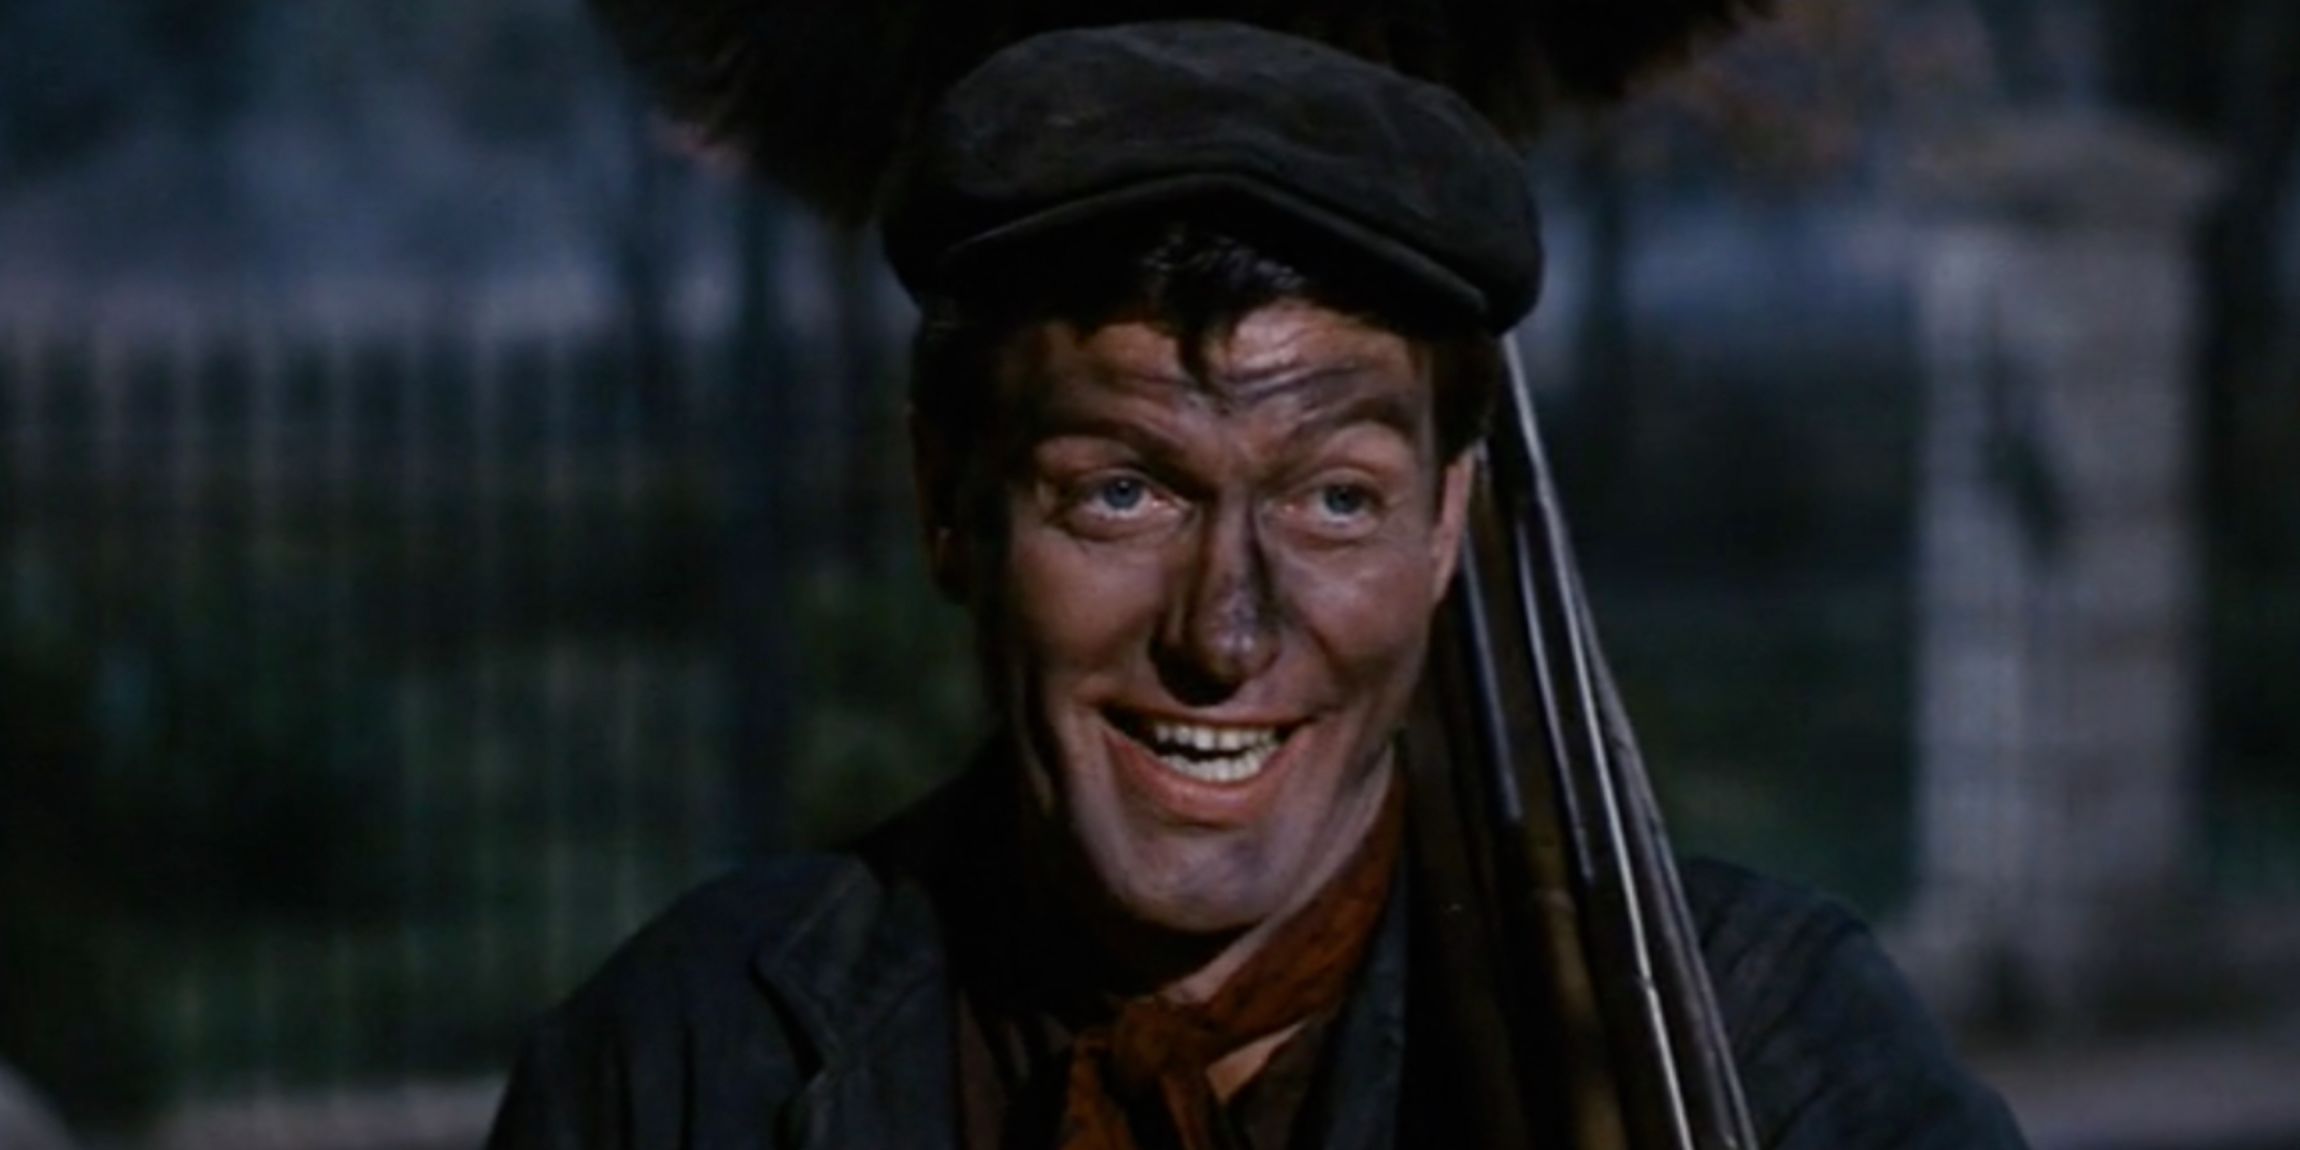 Dick van Dyke as Bert the chimney sweep in Mary Poppins